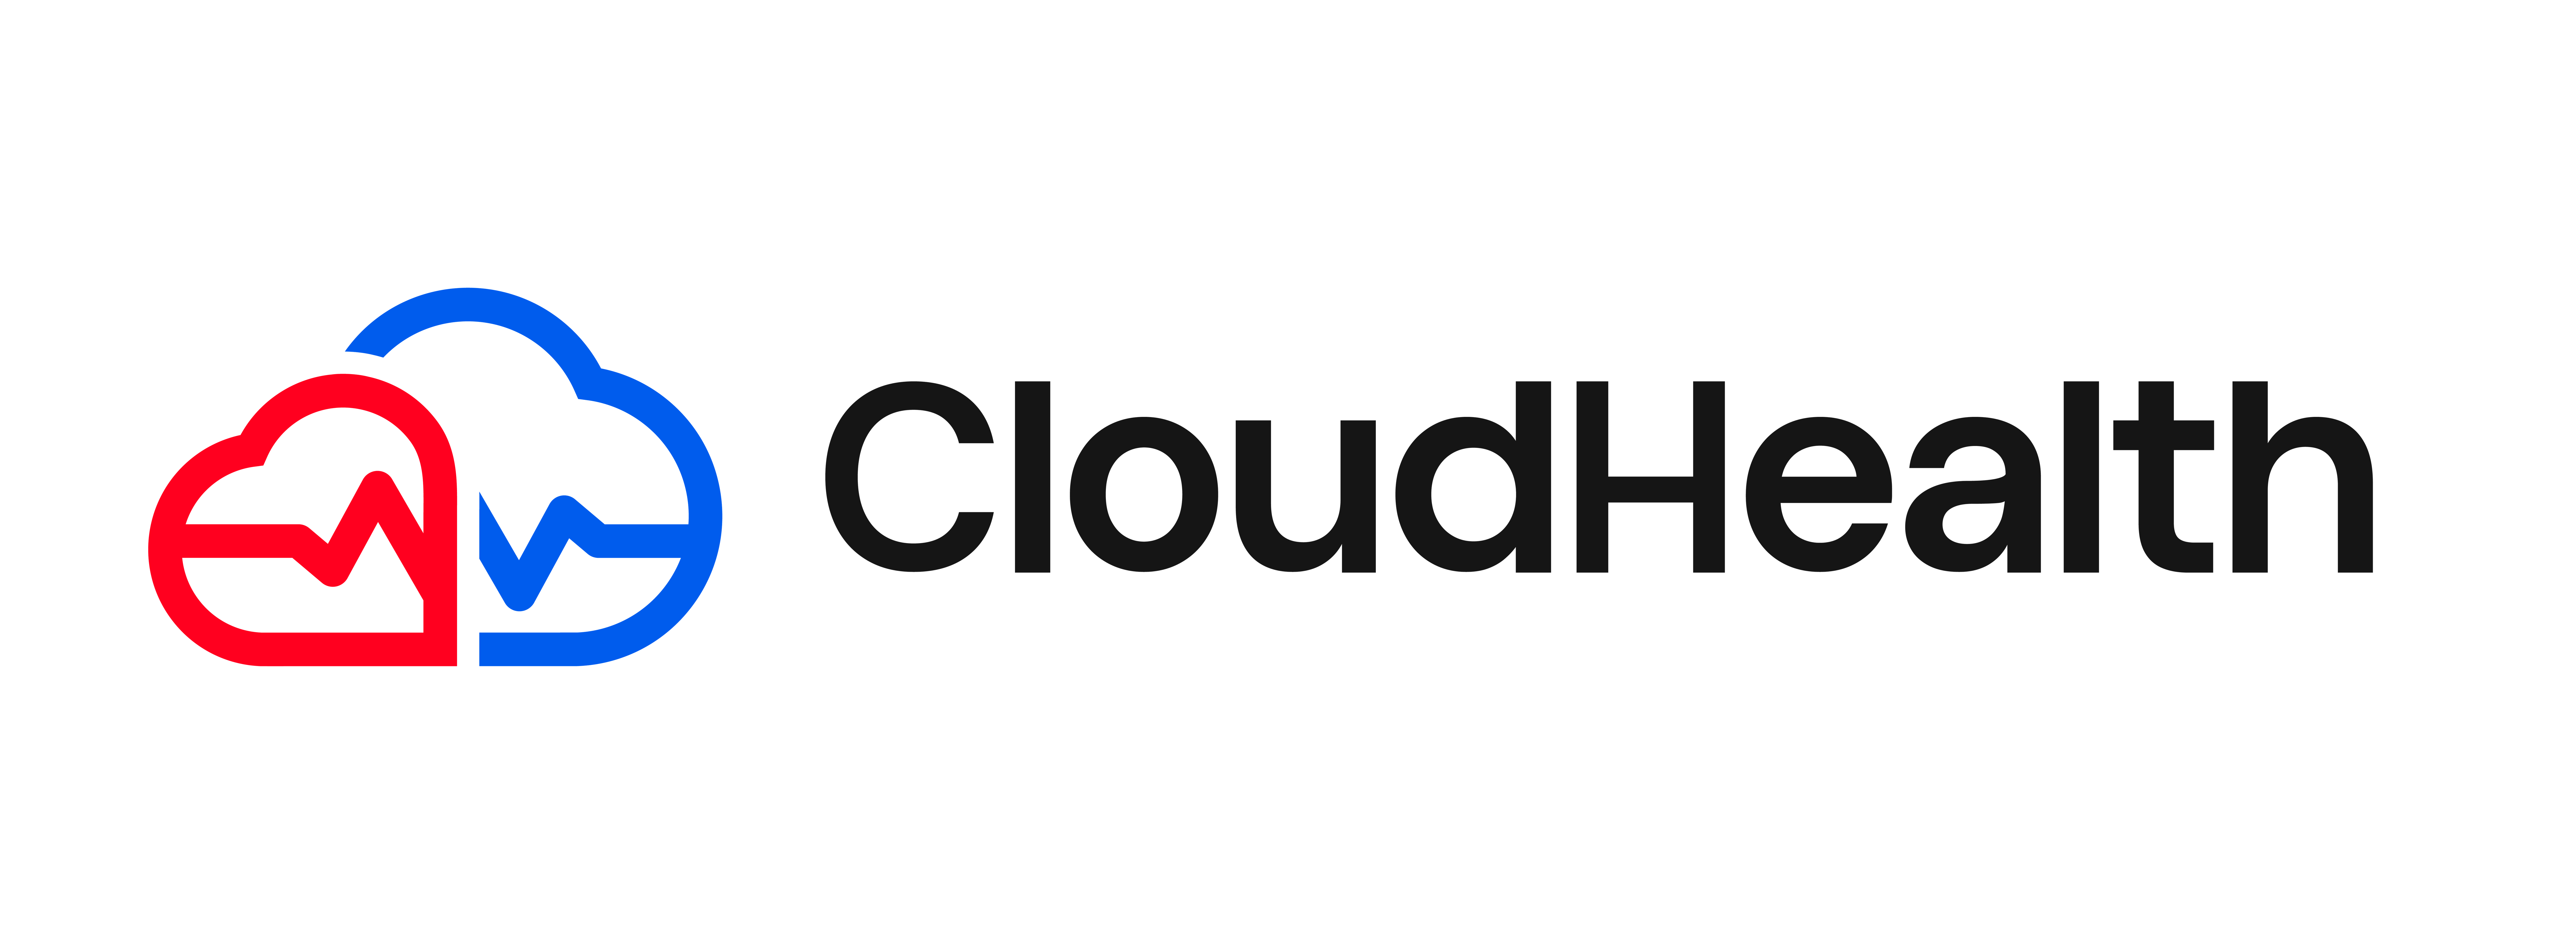 Cloudhealth logo